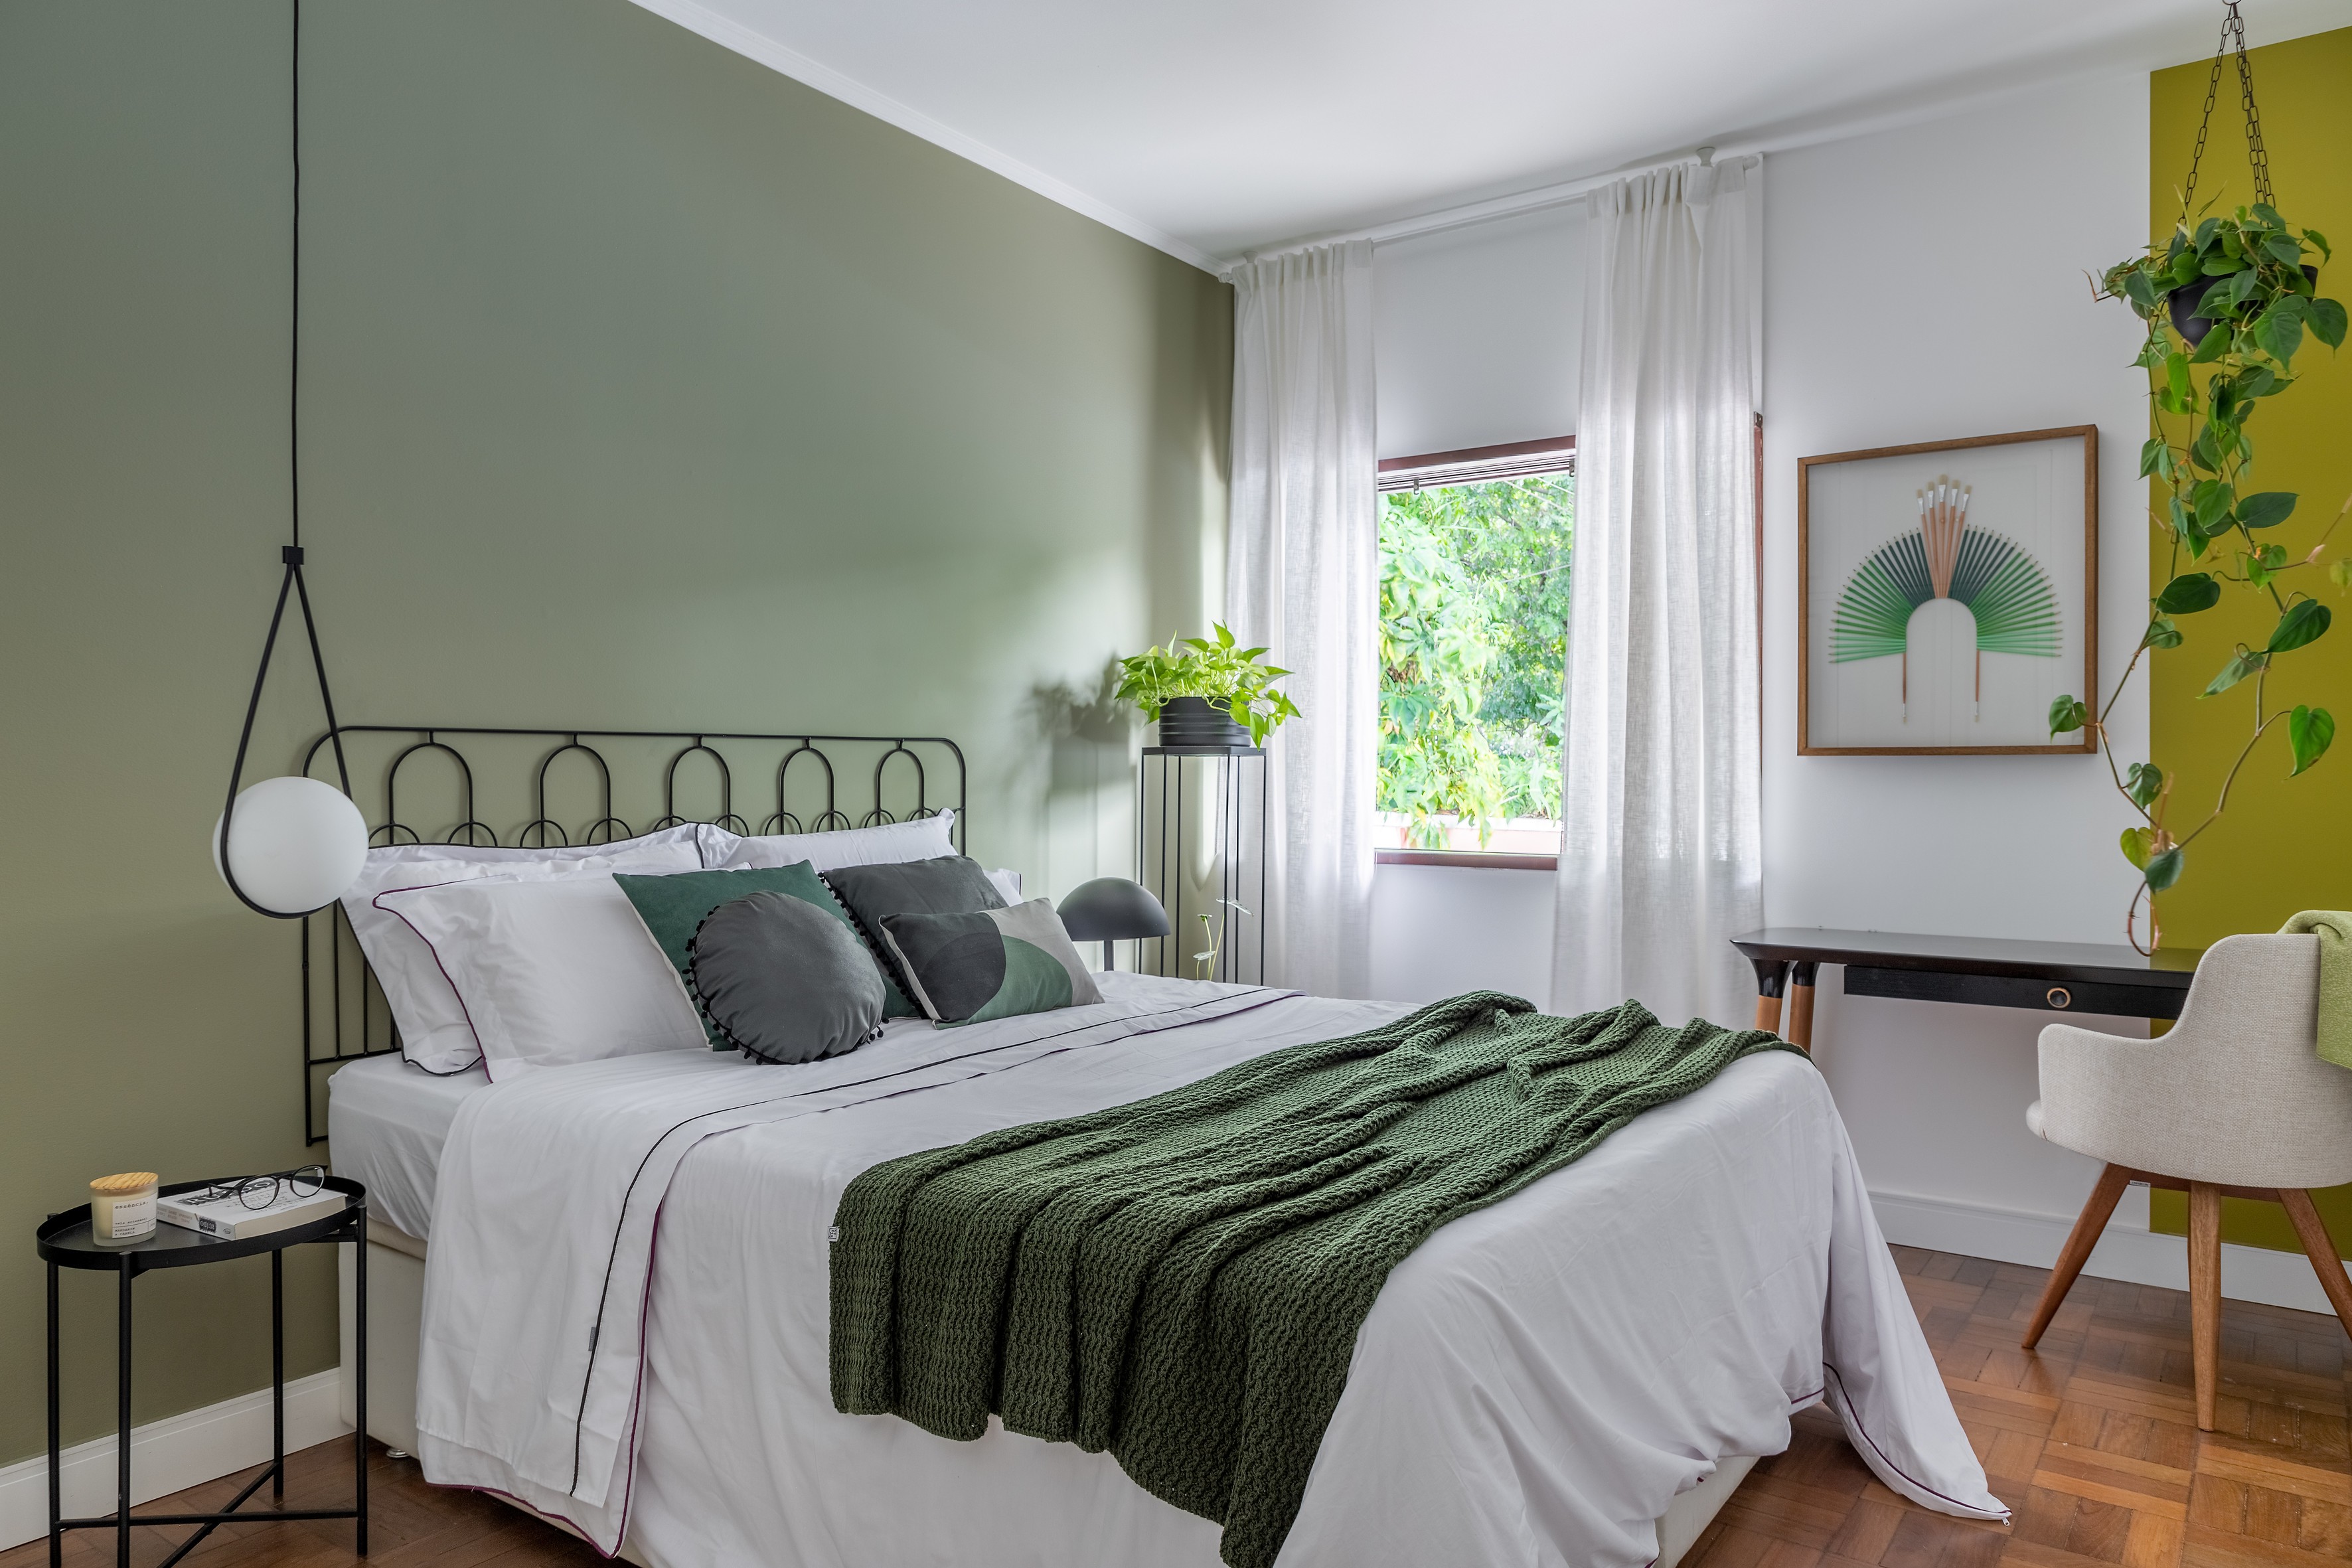 Quarto verde com parede verde, cama com roupa de cama branca e verde, pintura setorizada verde, plantas no quarto, parede branca, teto branco e piso de madeira.